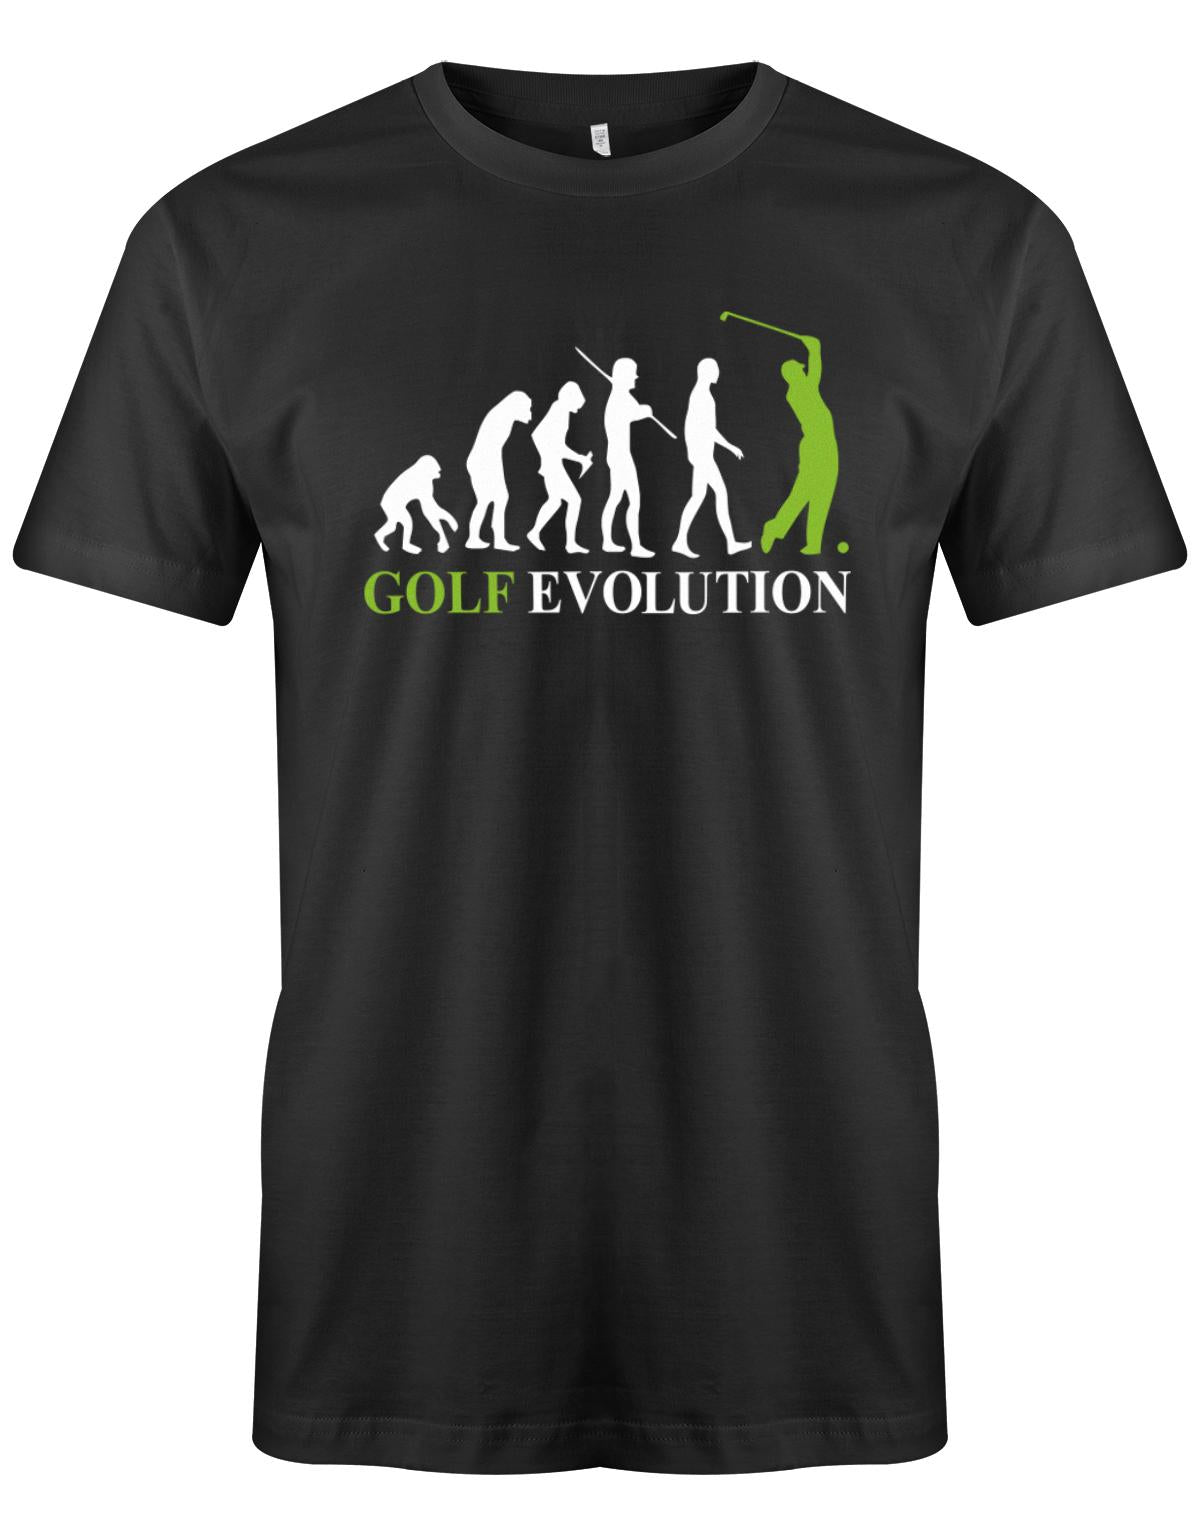 Golf-evolution-Herren-Shirt-Schwarz